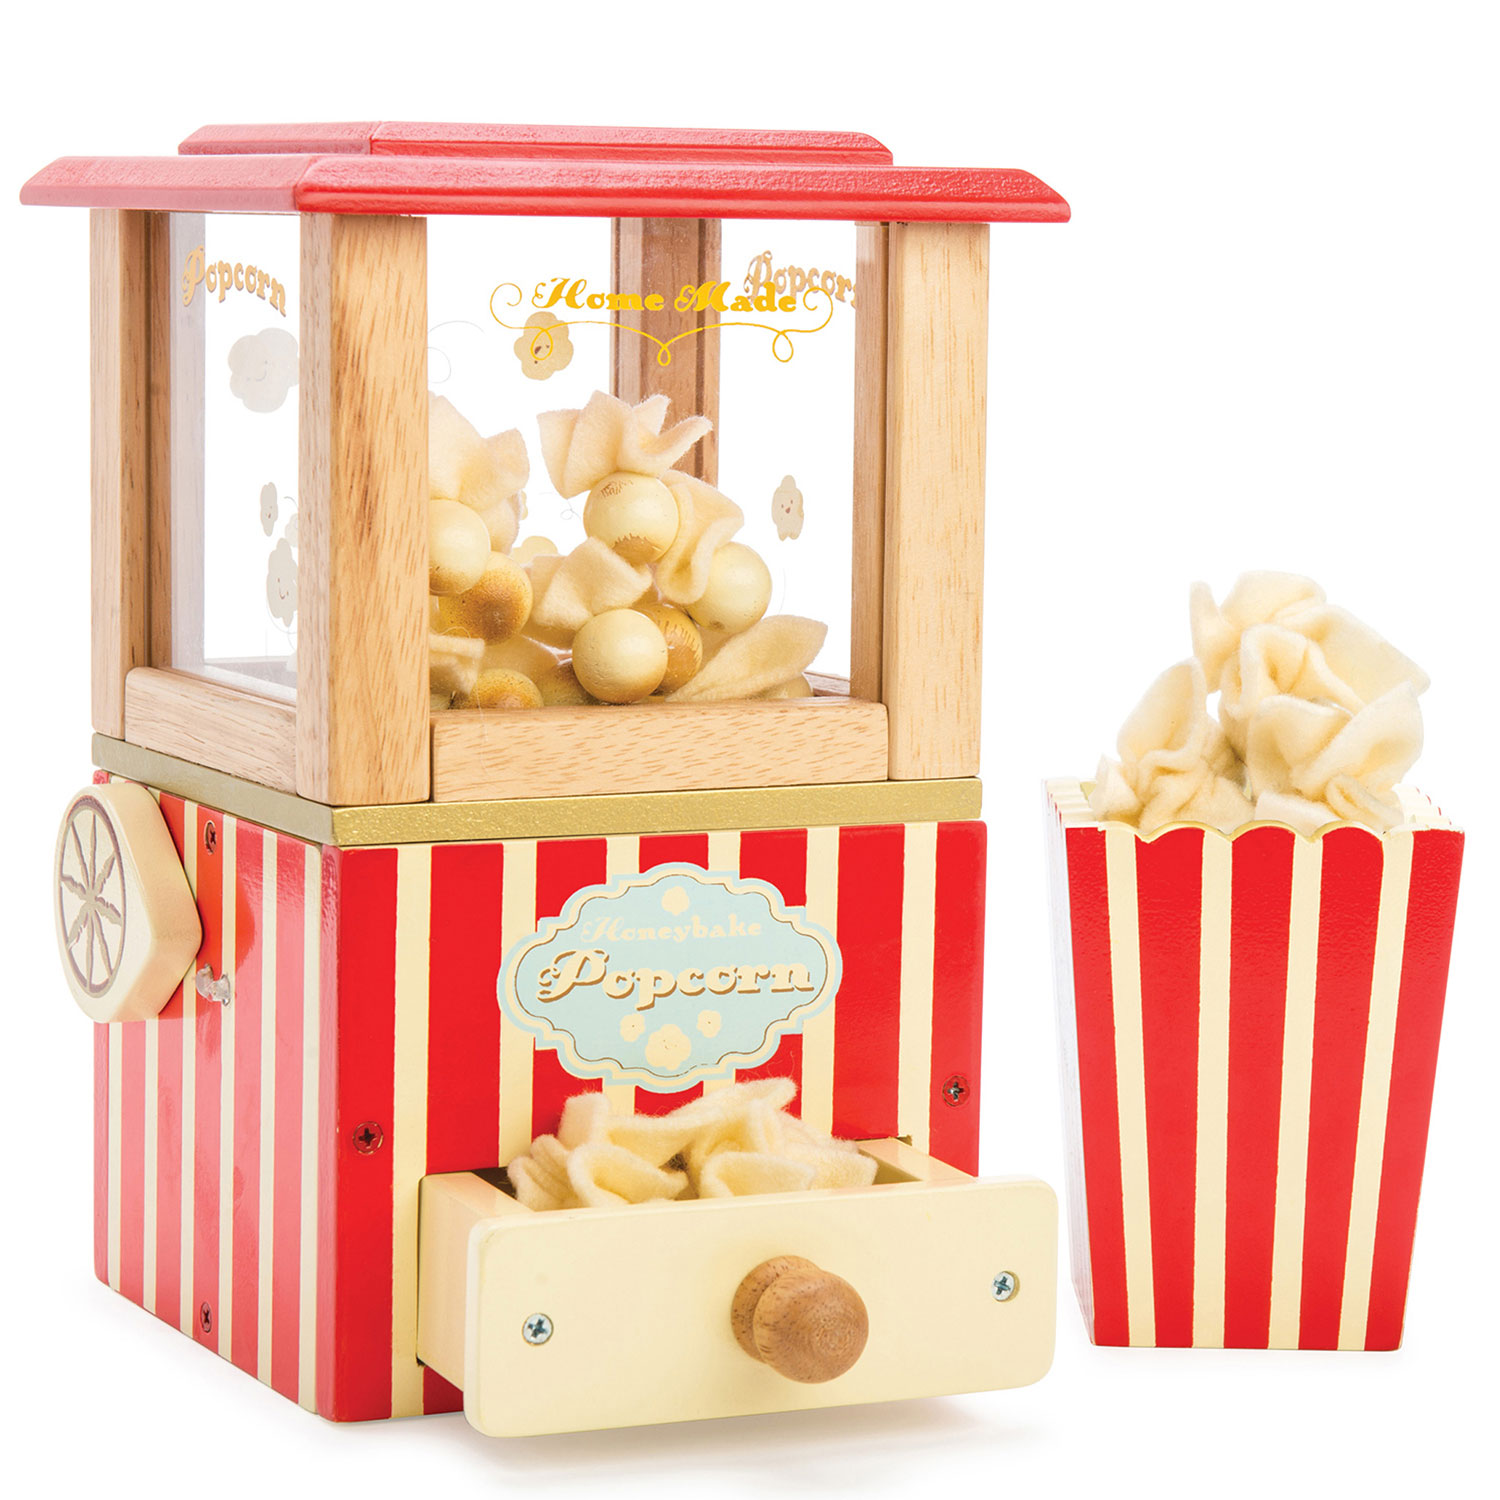 Popcornmaschine / Popcorn Machine